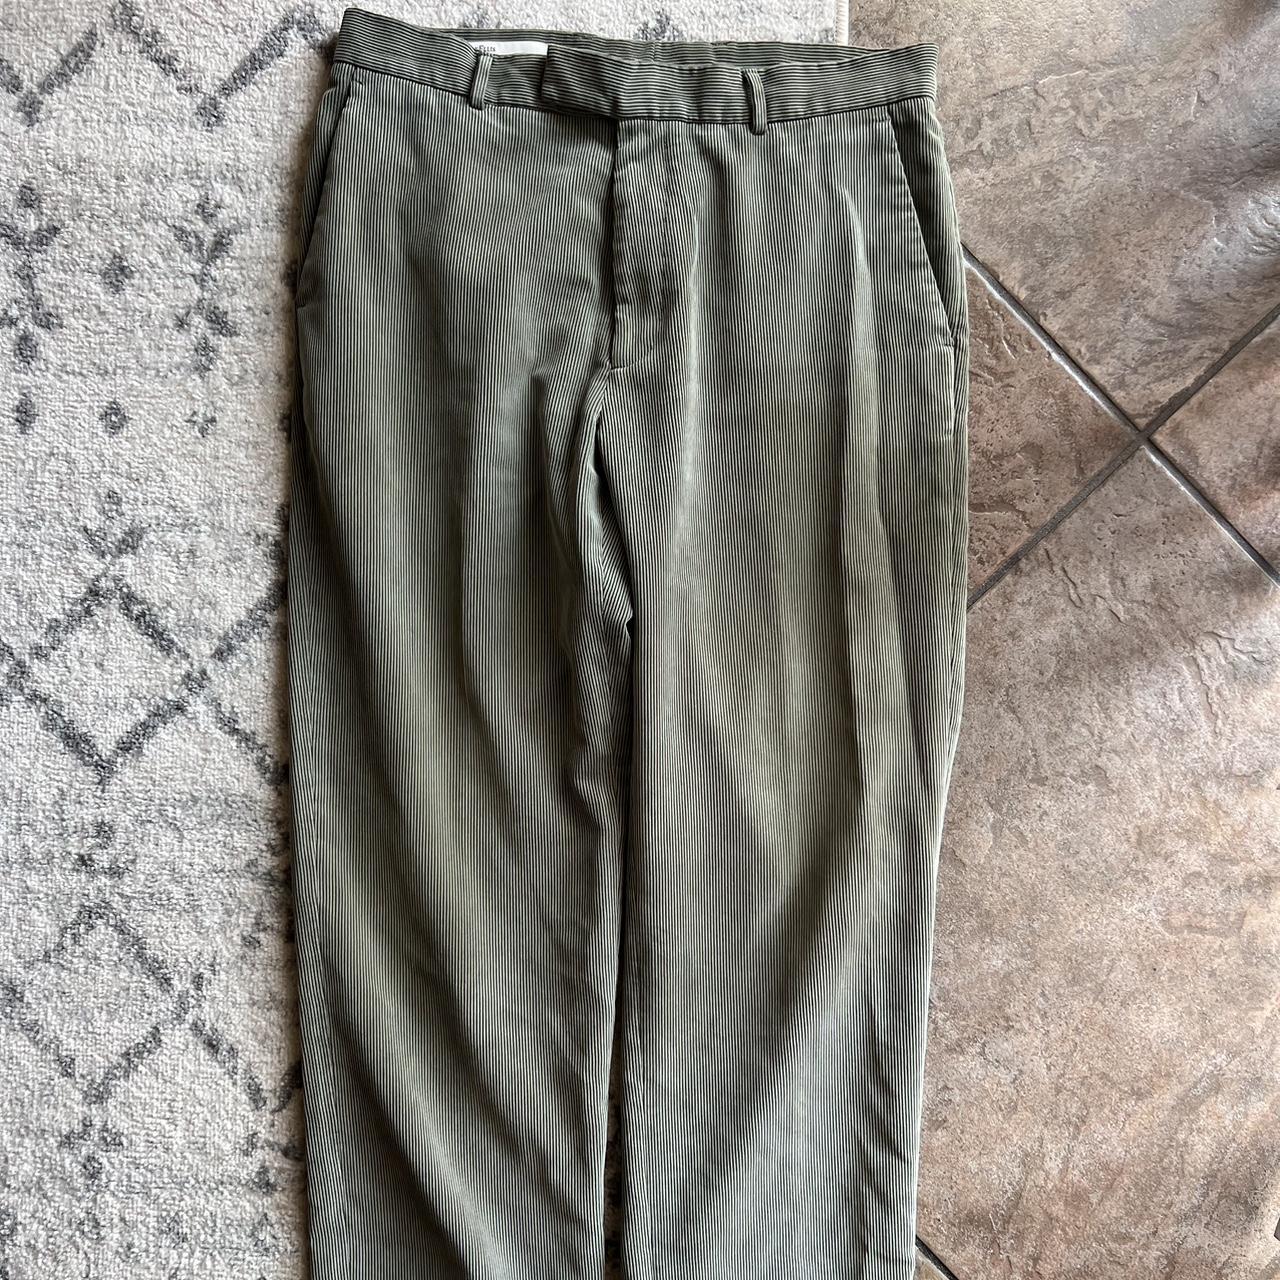 Sage Green Perry Ellis Corduroy Pants (34x30) - Depop